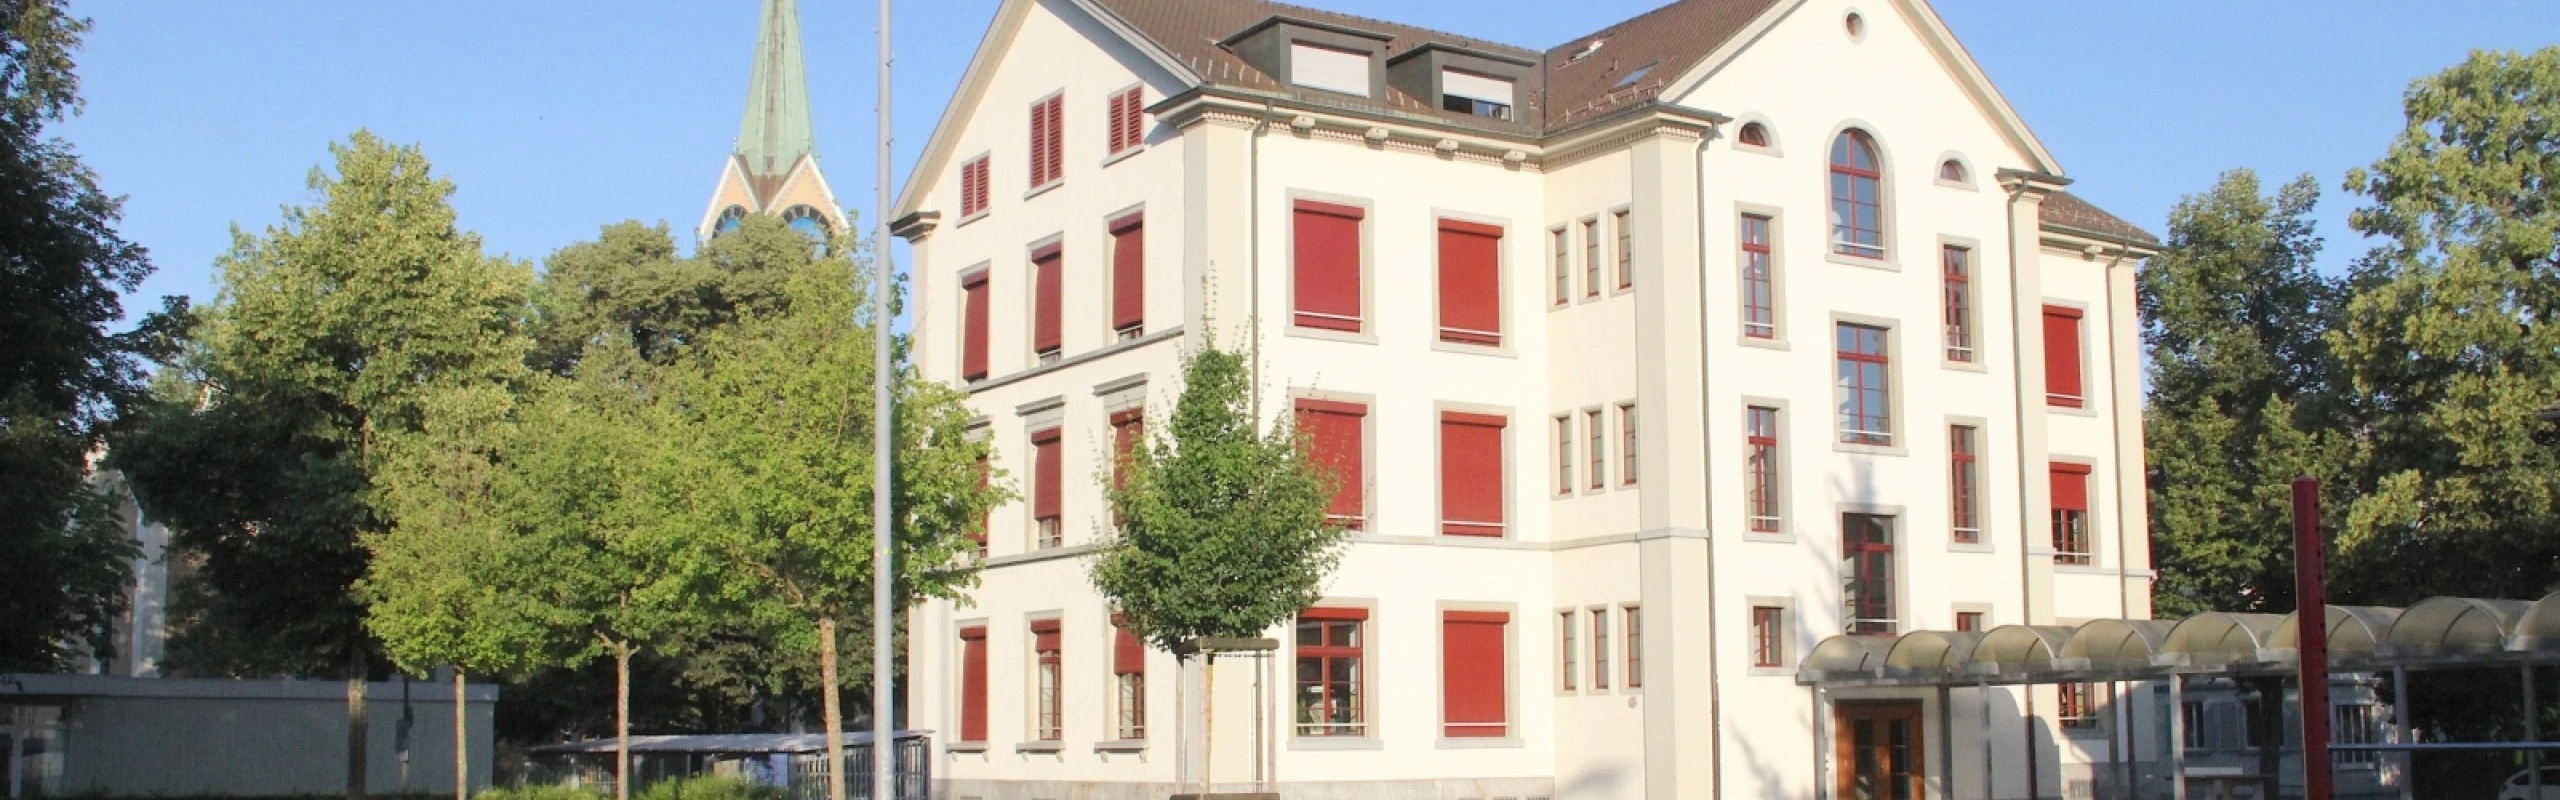 Schulhaus Gutenberg